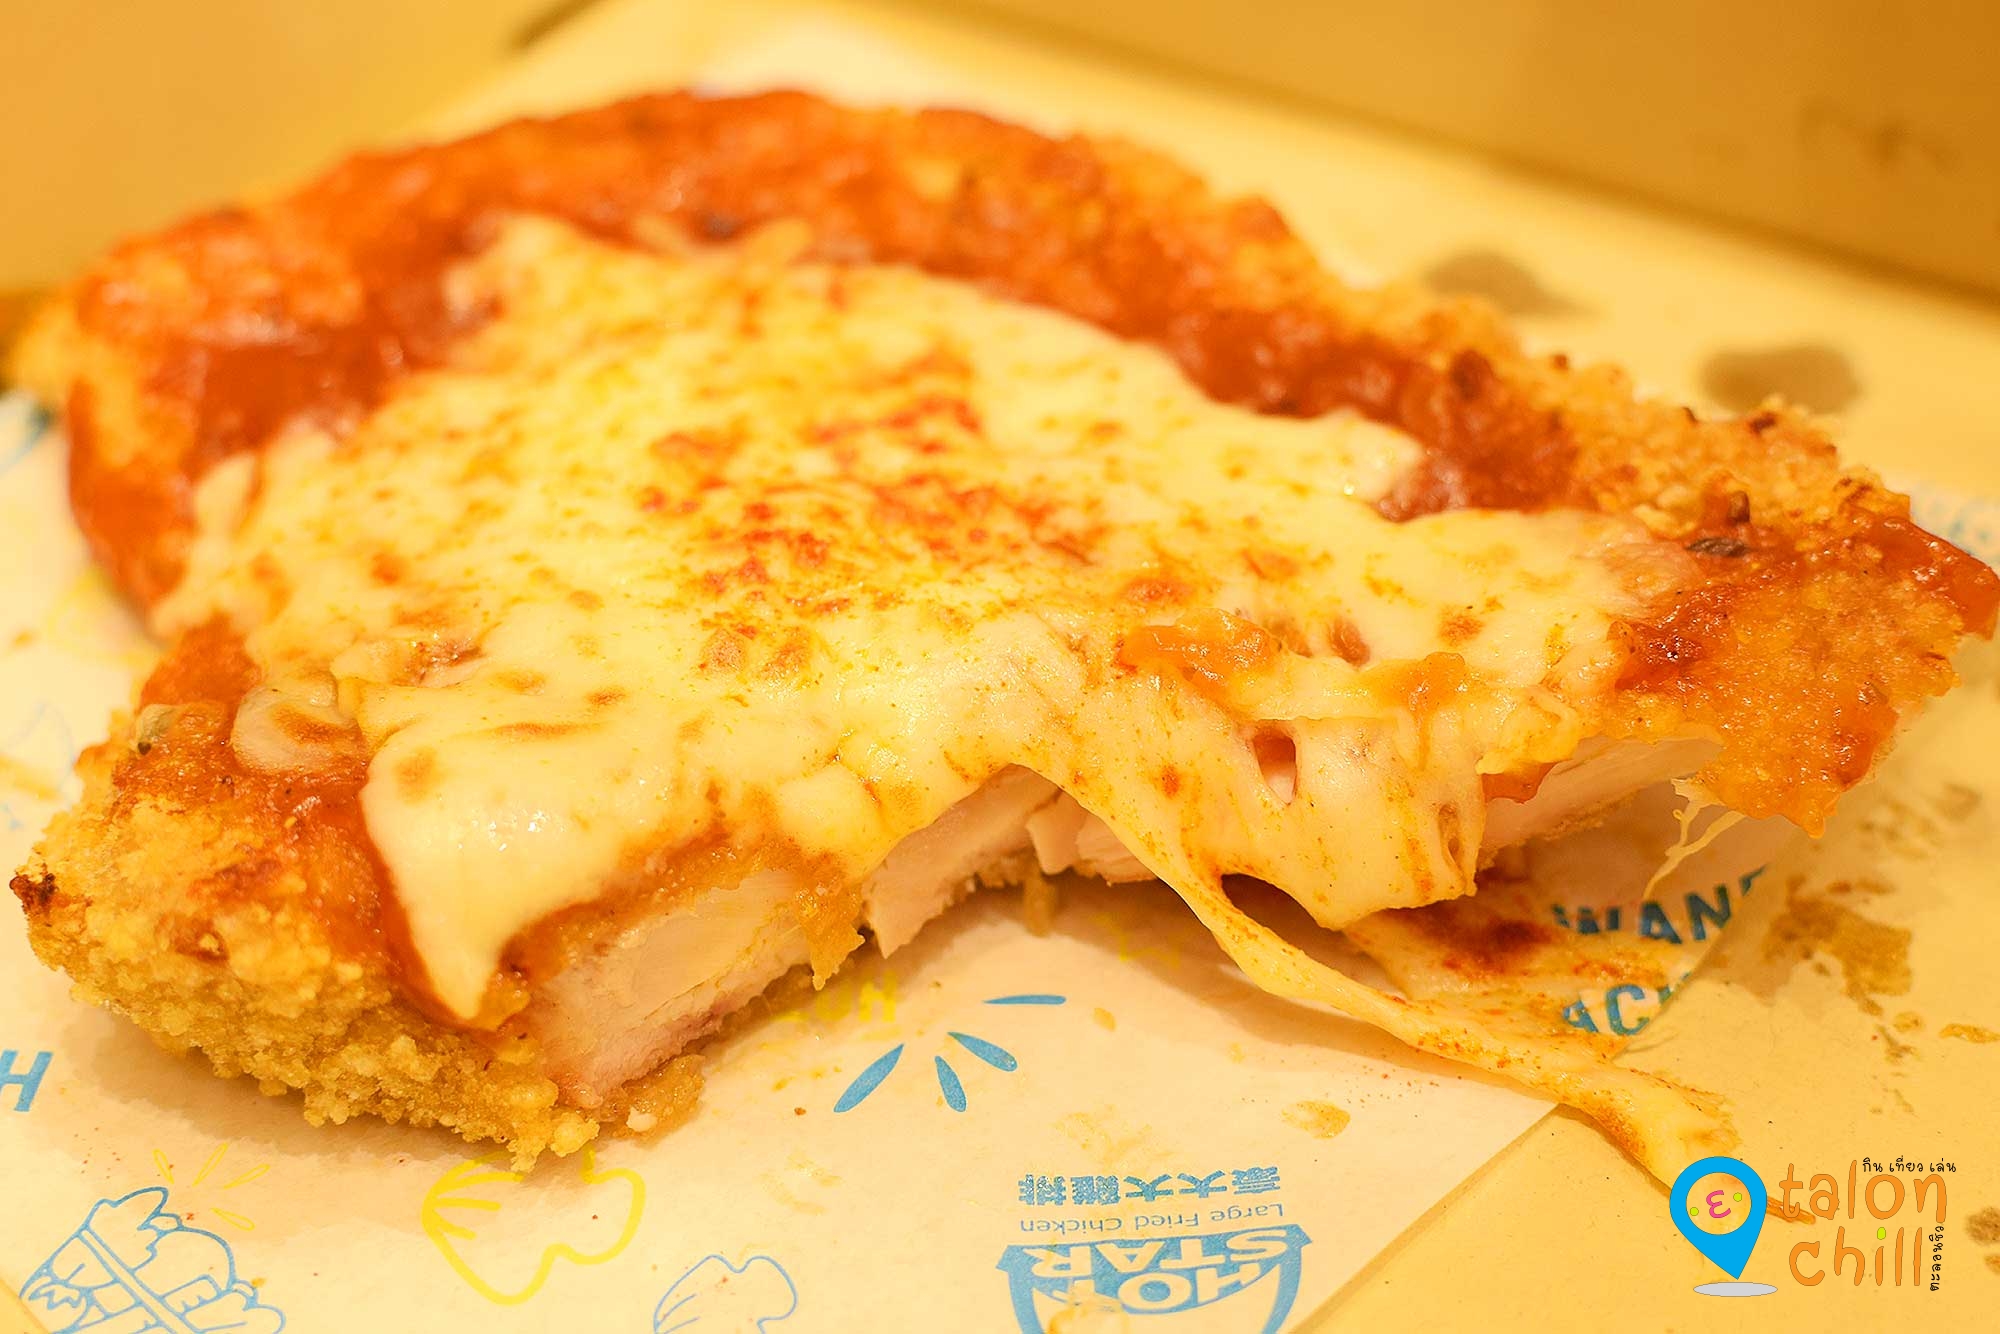 [ตะลอนกิน] HOT-STAR CHICKEN PIZZA ฮ็อตสตาร์ชิกเก้นพิซซ่า ไก่ราดด้วยพิซซ่าซอส (XXL Chicken Pizza) ของร้านฮ็อทสตาร์ (Hot Star)